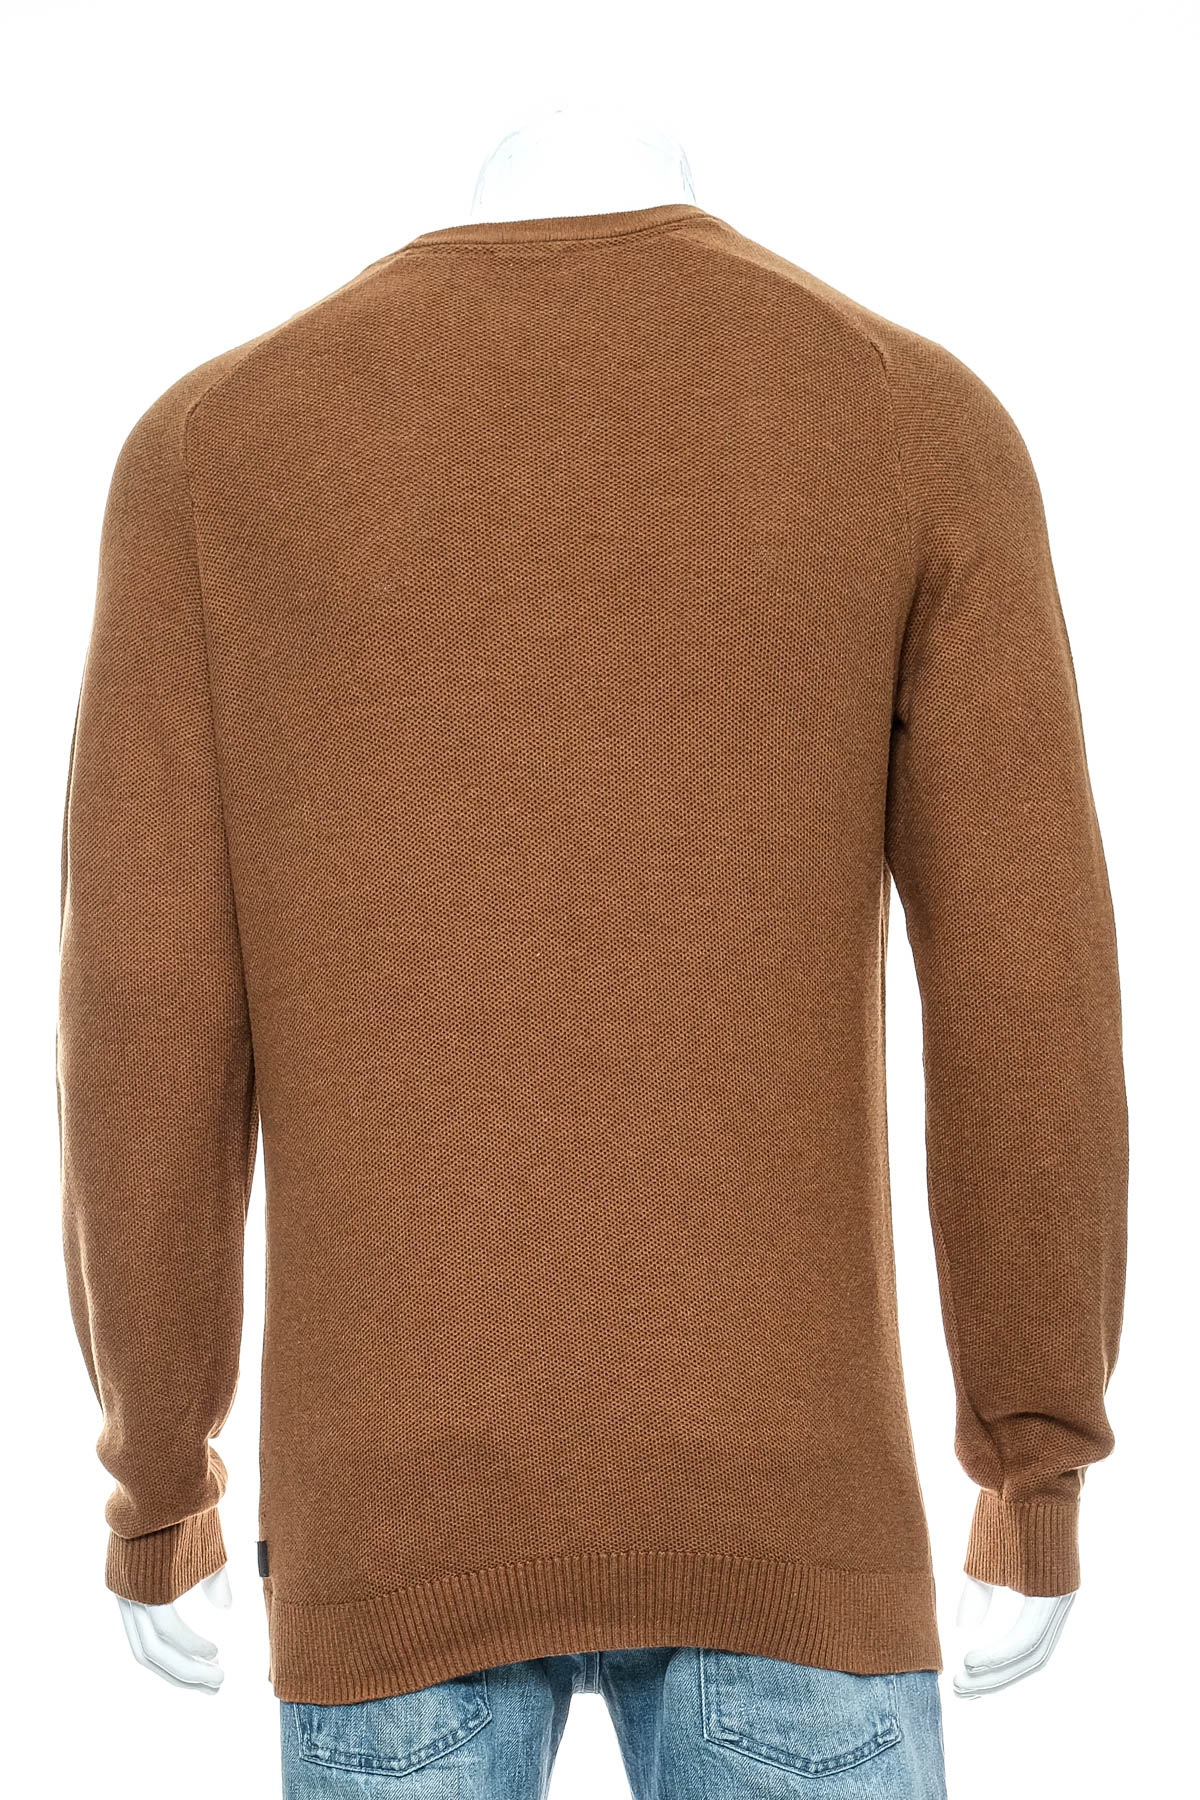 Men's sweater - ESPRIT - 1